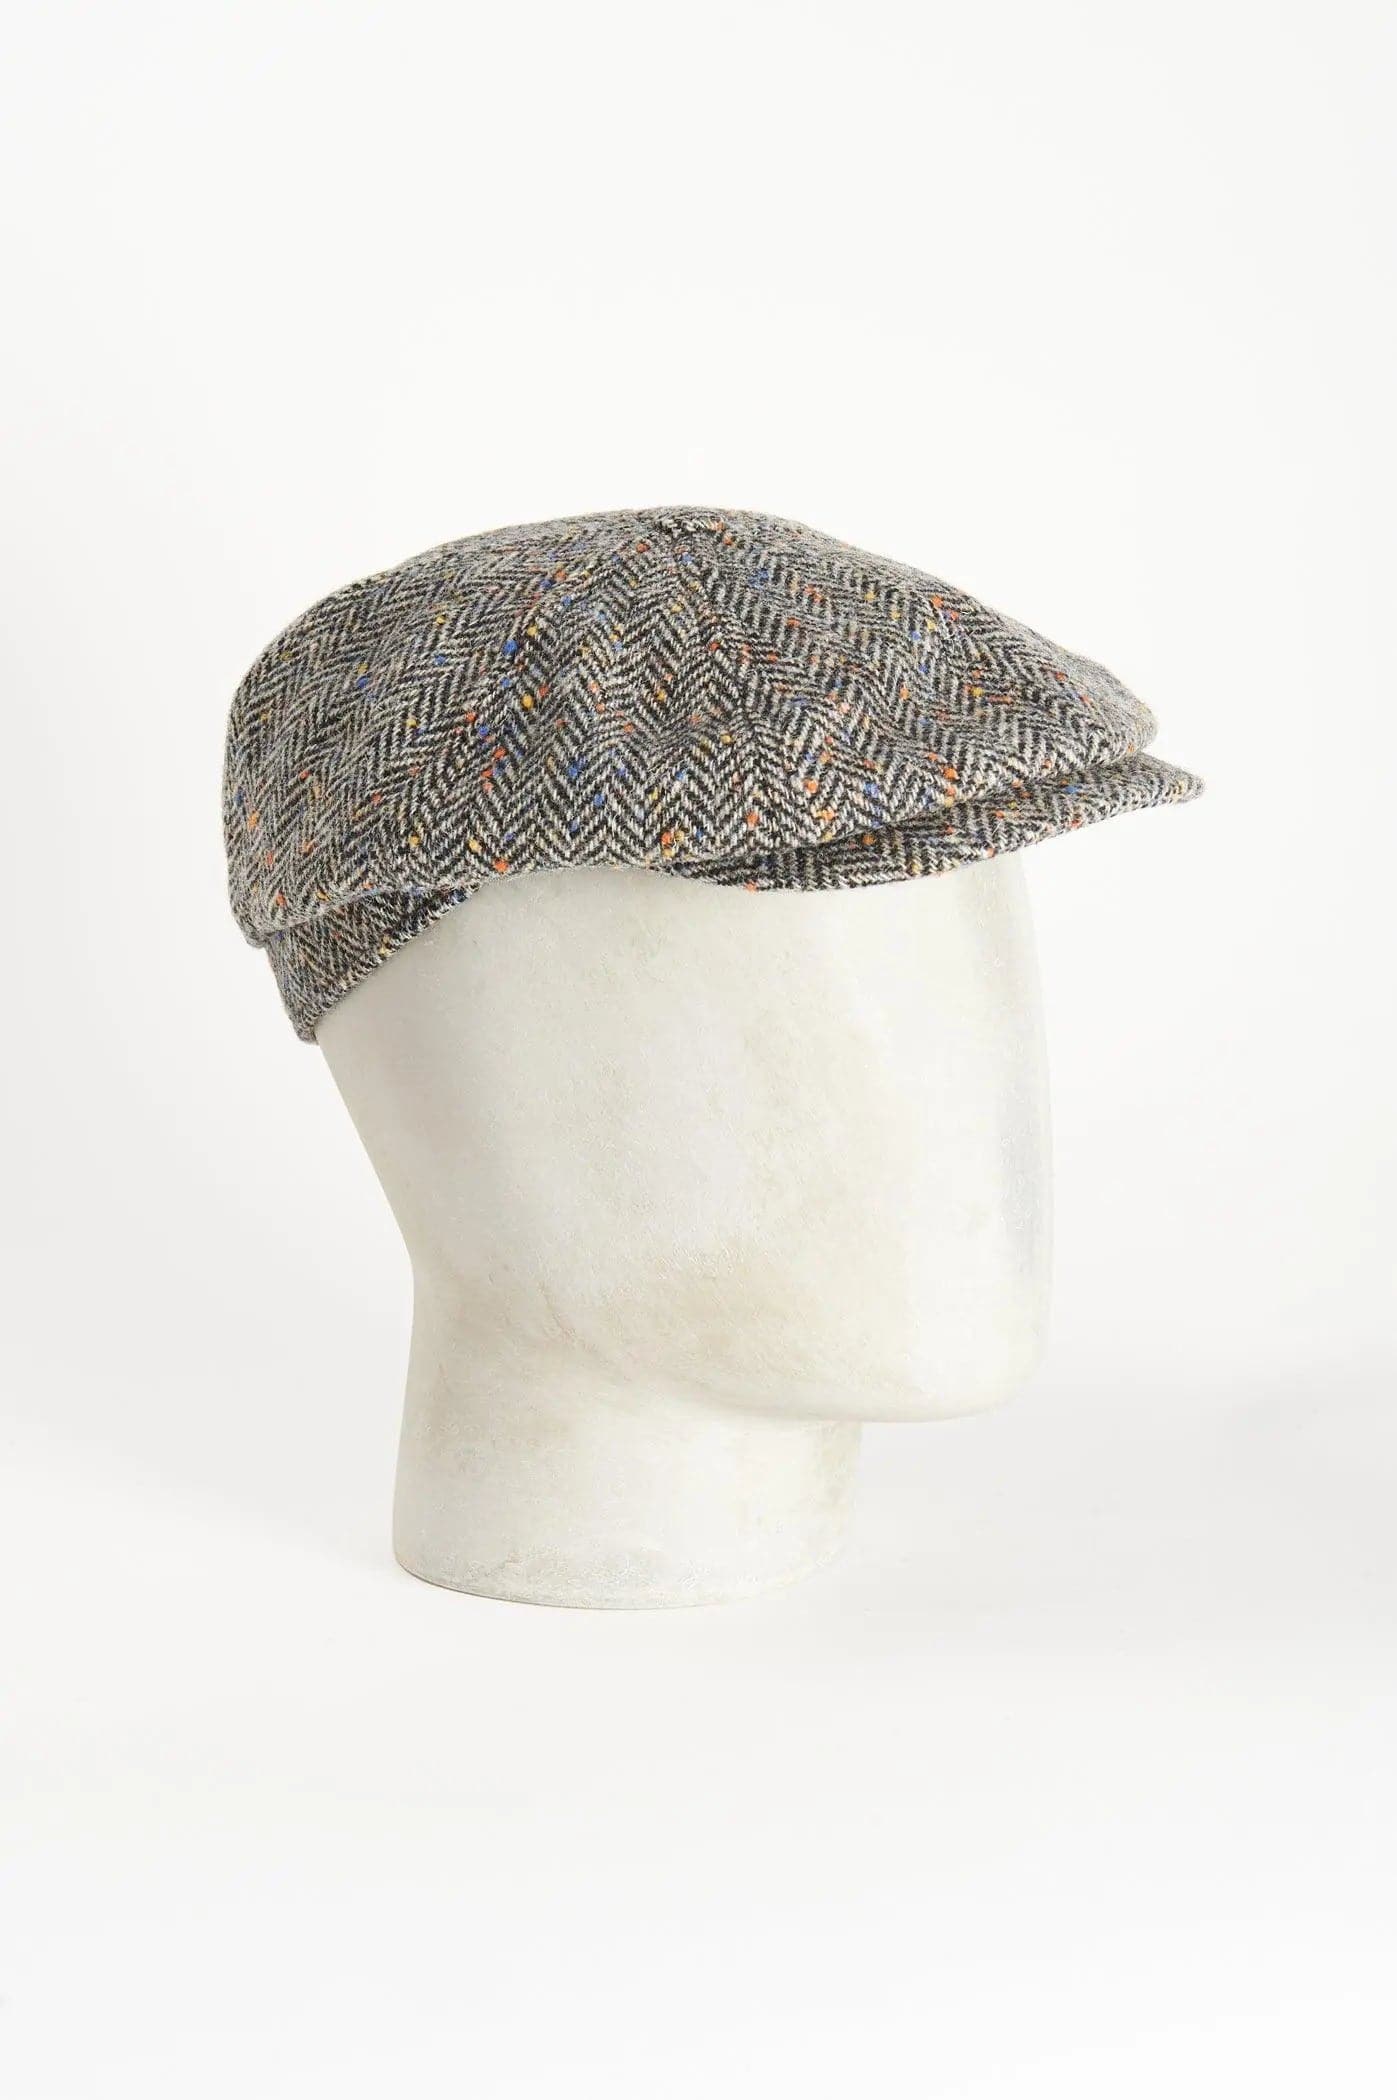 Otto spicchi (8 pieces)
L'Otto Spicchi è un cappello di forma unica, il che lo rende un accessorio versatile adatto ad ogni situazione. Goditi l'eleganza di ogni momento con un tocco di raDE PAZ